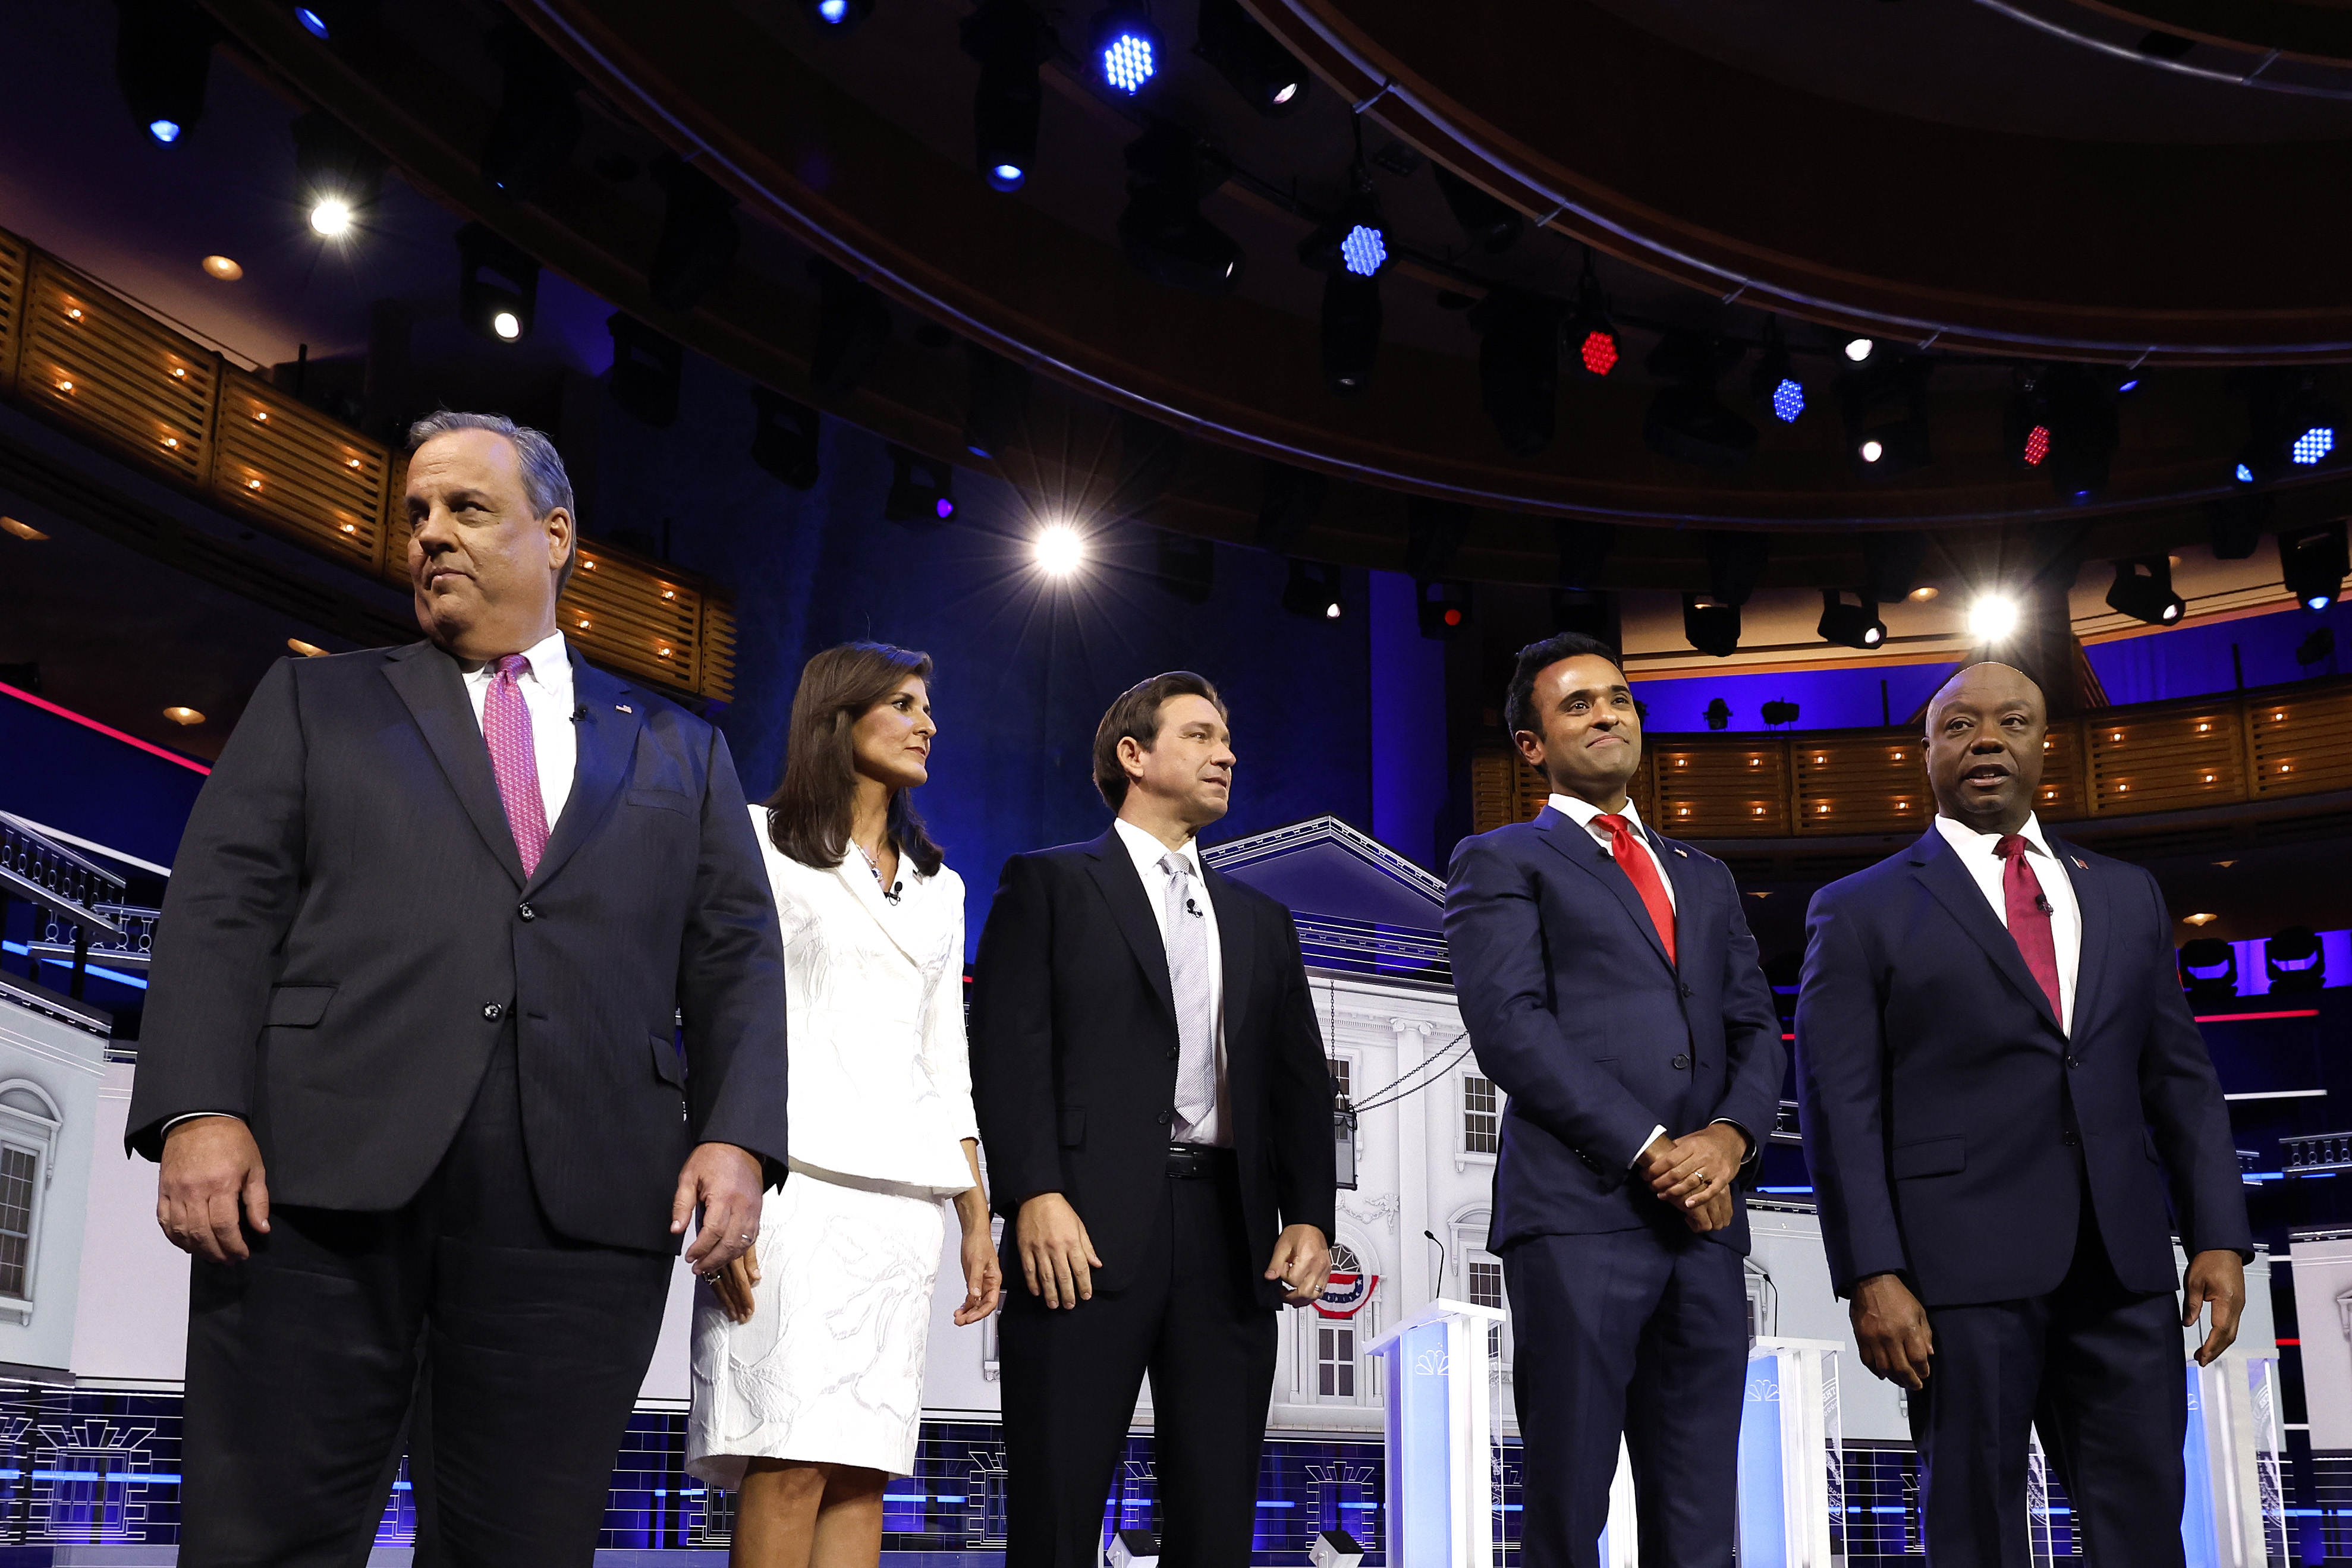 Heute Abend dominierten die Debatten über den Konflikt zwischen Israel und Palästina die Bühne, wobei die meisten Kandidaten ihre uneingeschränkte Unterstützung bekundeten